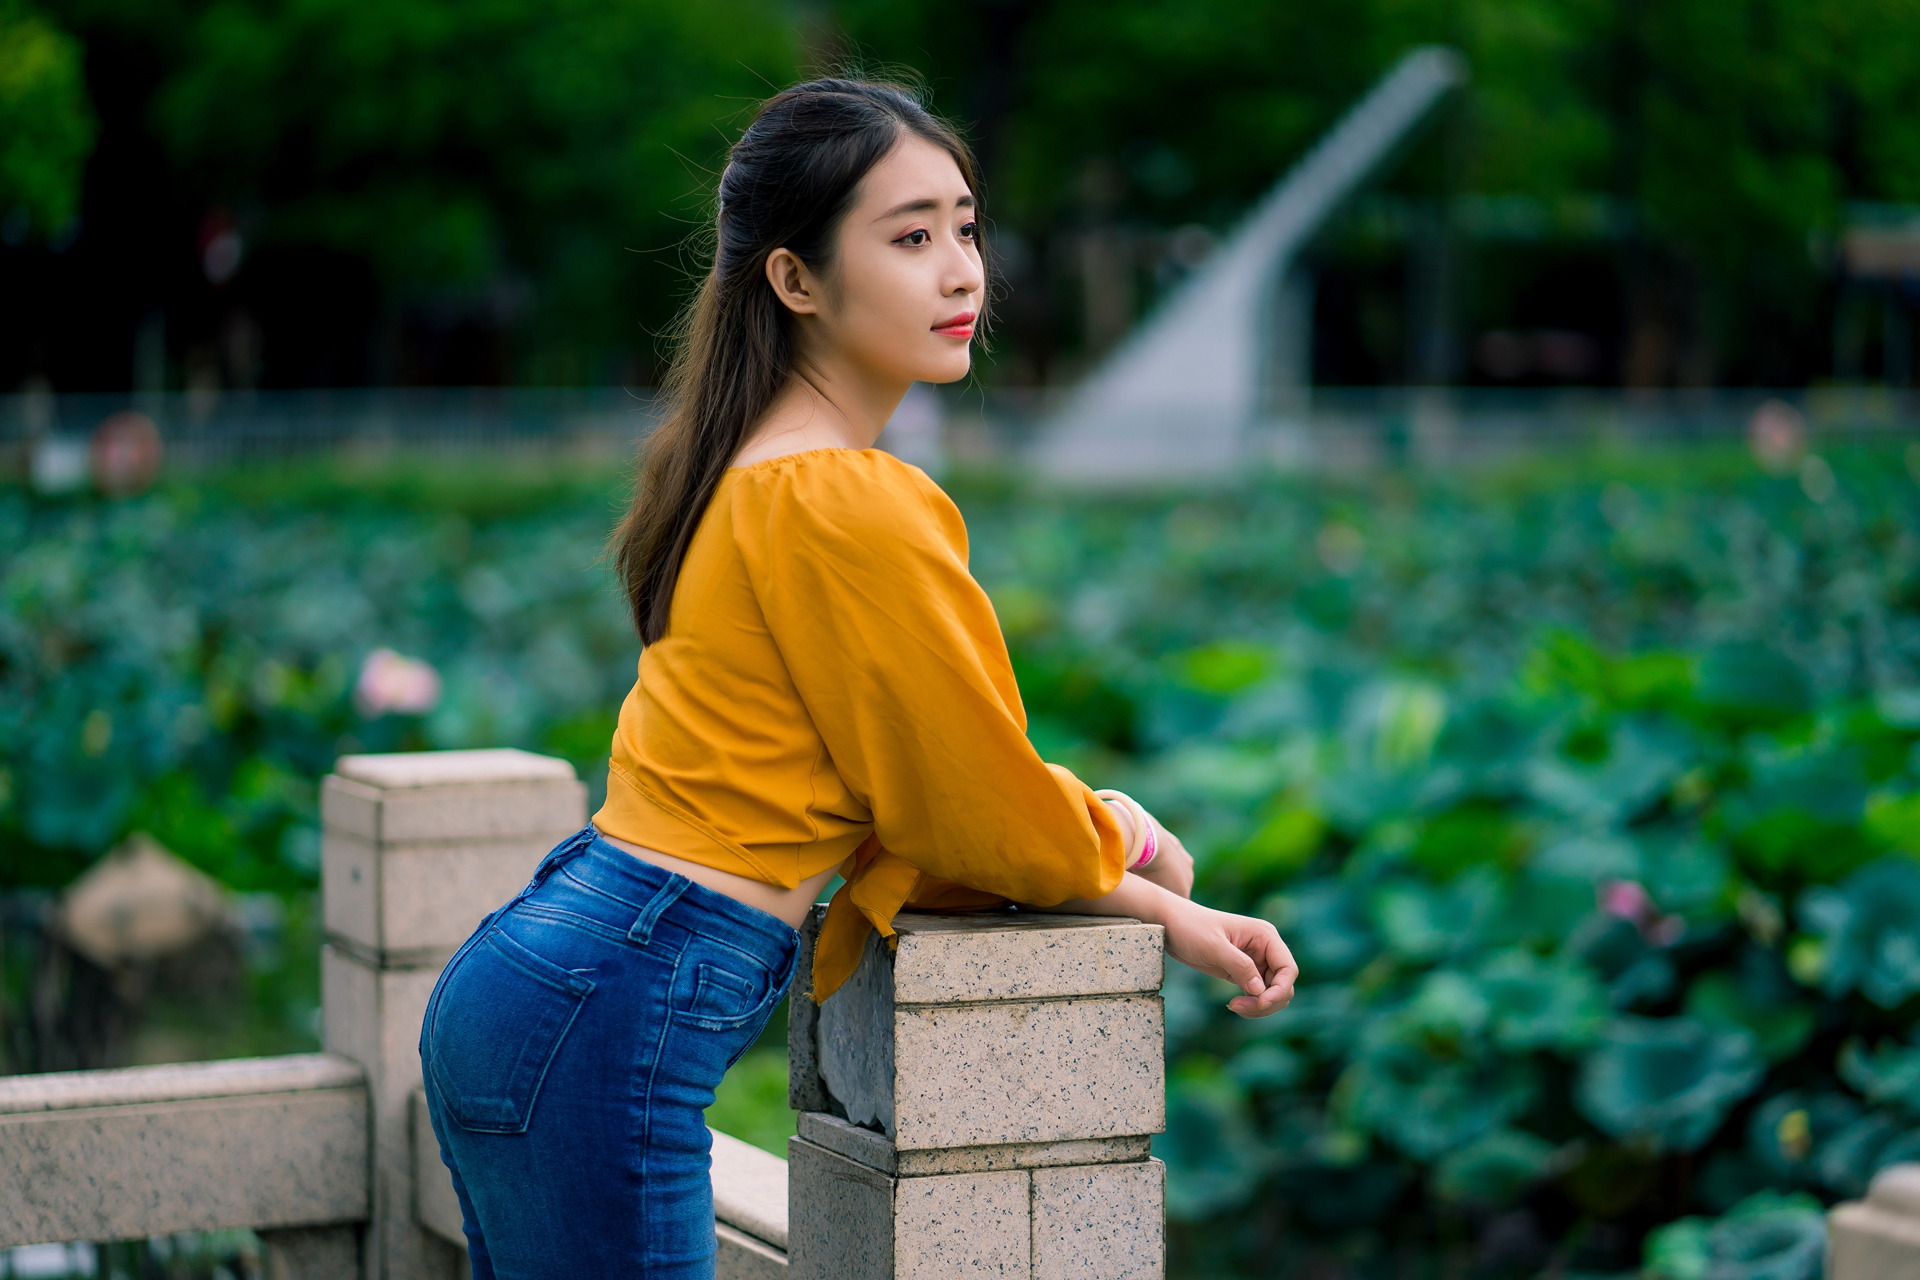 Asian Model Women Long Hair Dark Hair Jeans Blouses 1920x1280